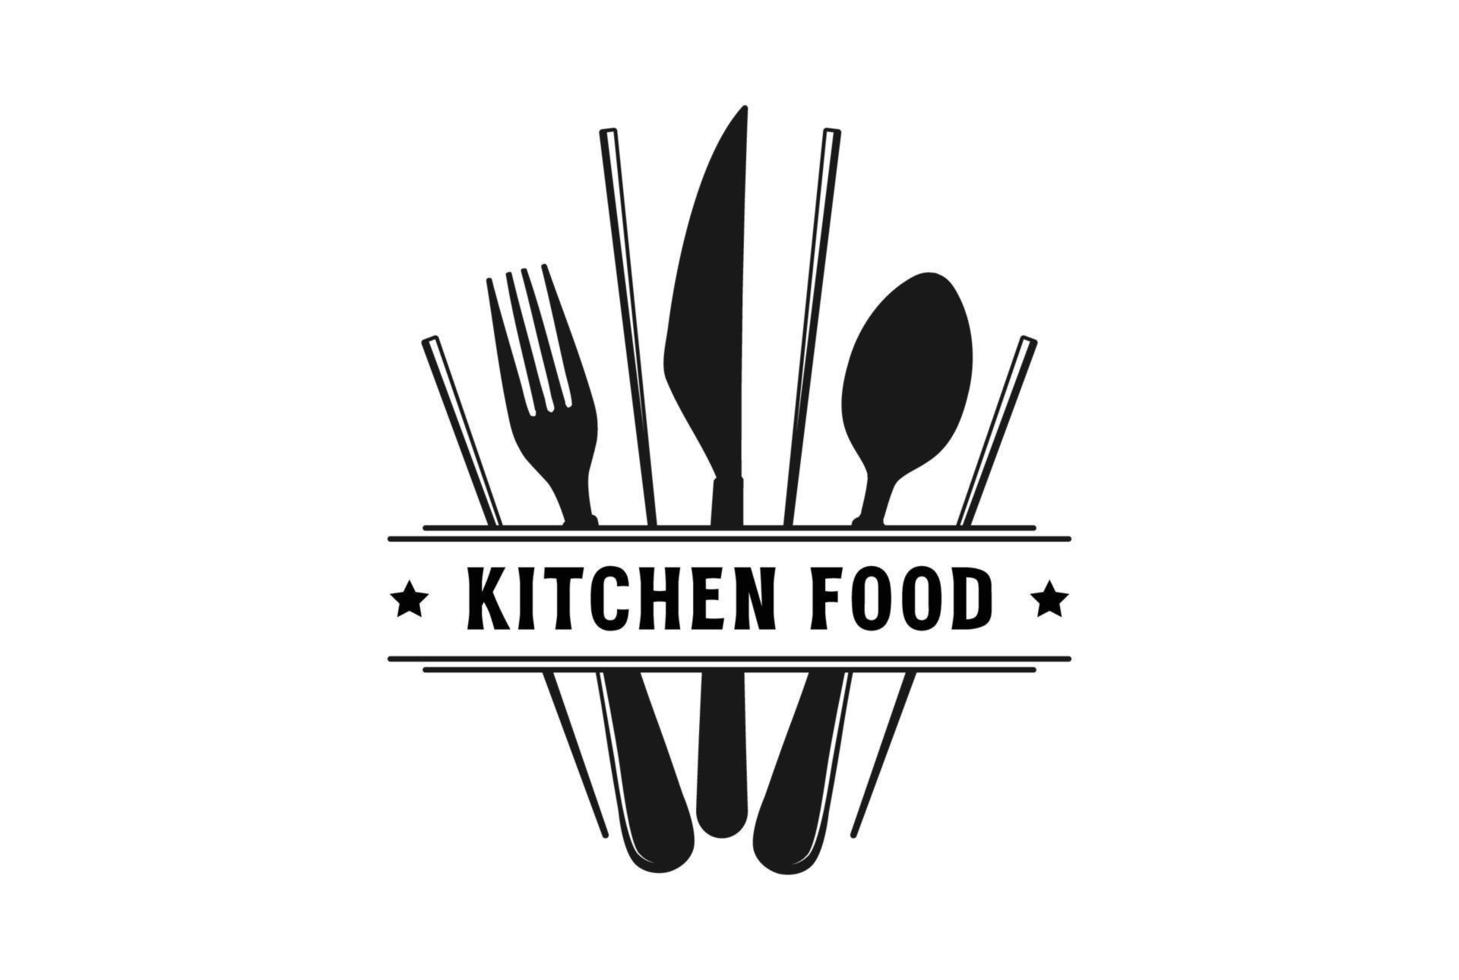 ancien rétro cuillère fourchette couteau et baguettes pour café restaurant nourriture culinaire restauration étiquette logo conception vecteur